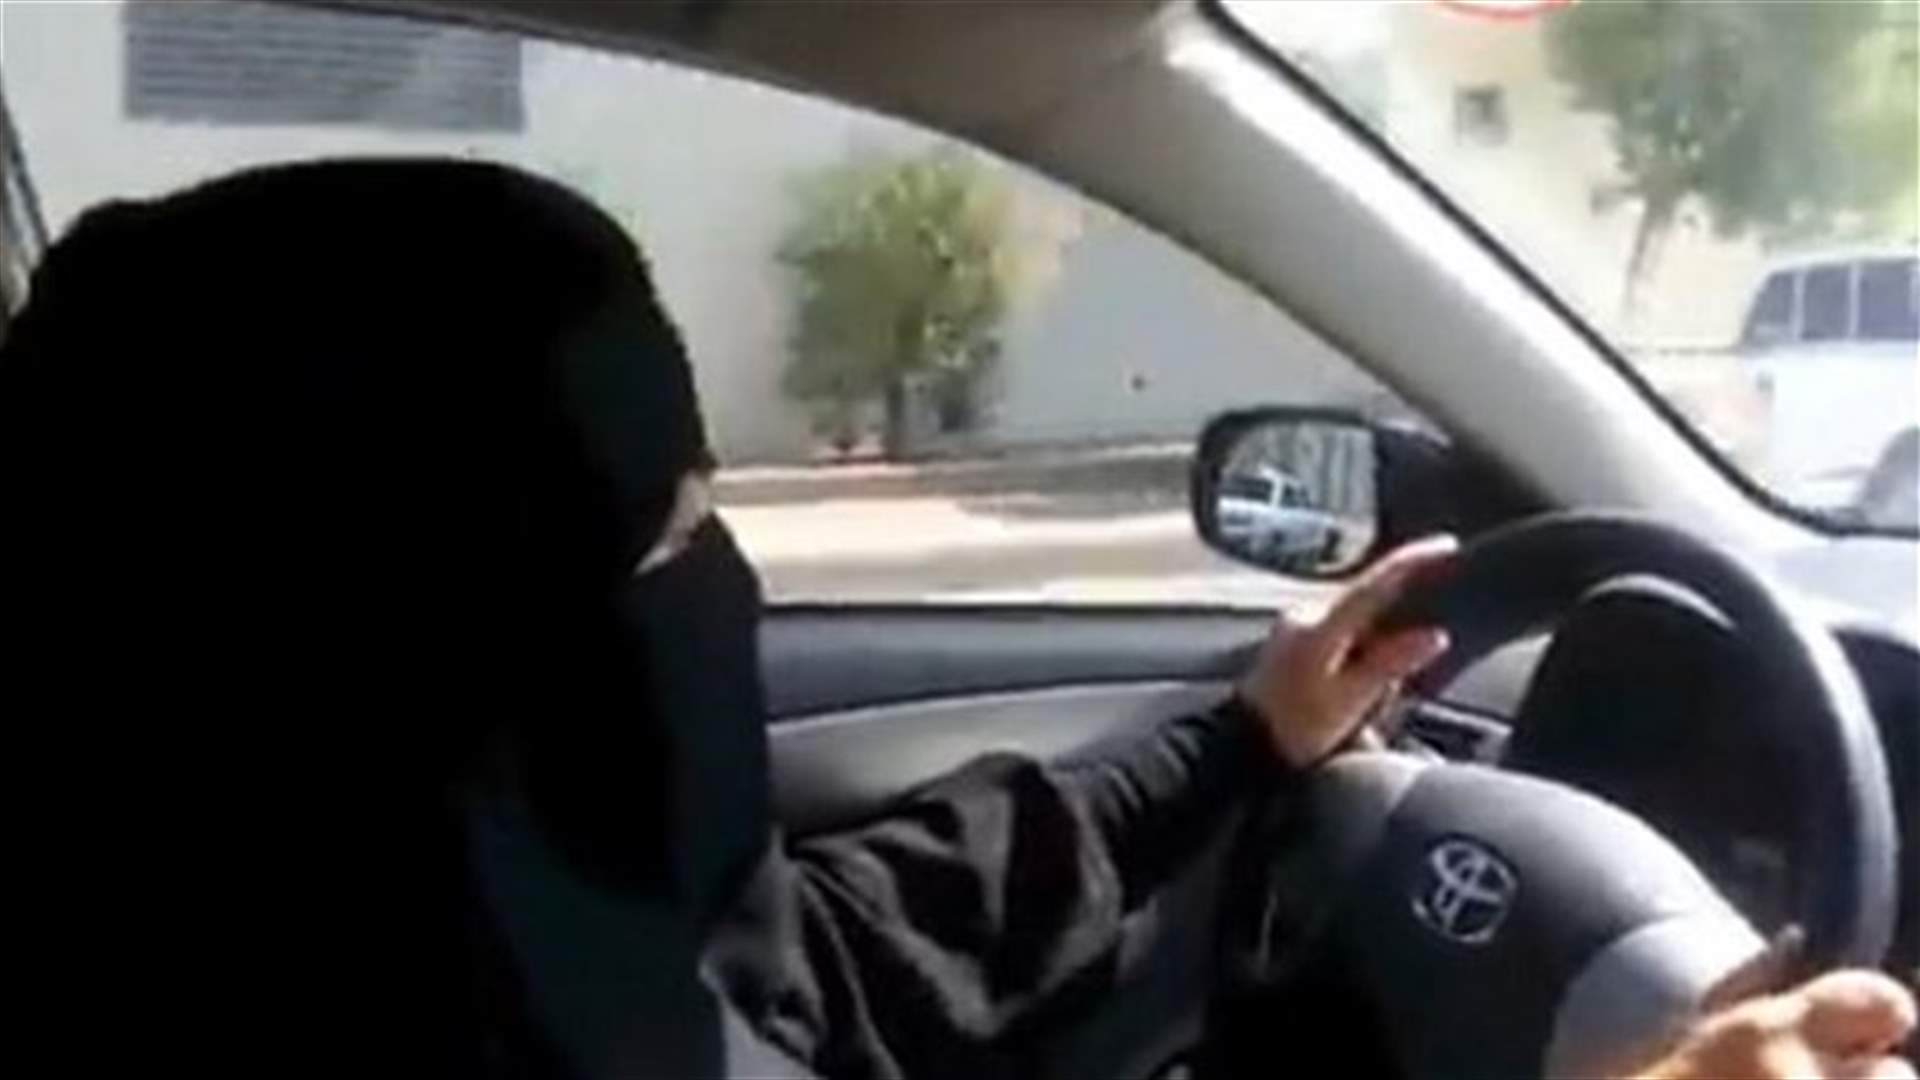 امرأة سعودية تتحدى الحظر على قيادة السيارات وزوجها يدفع غرامة